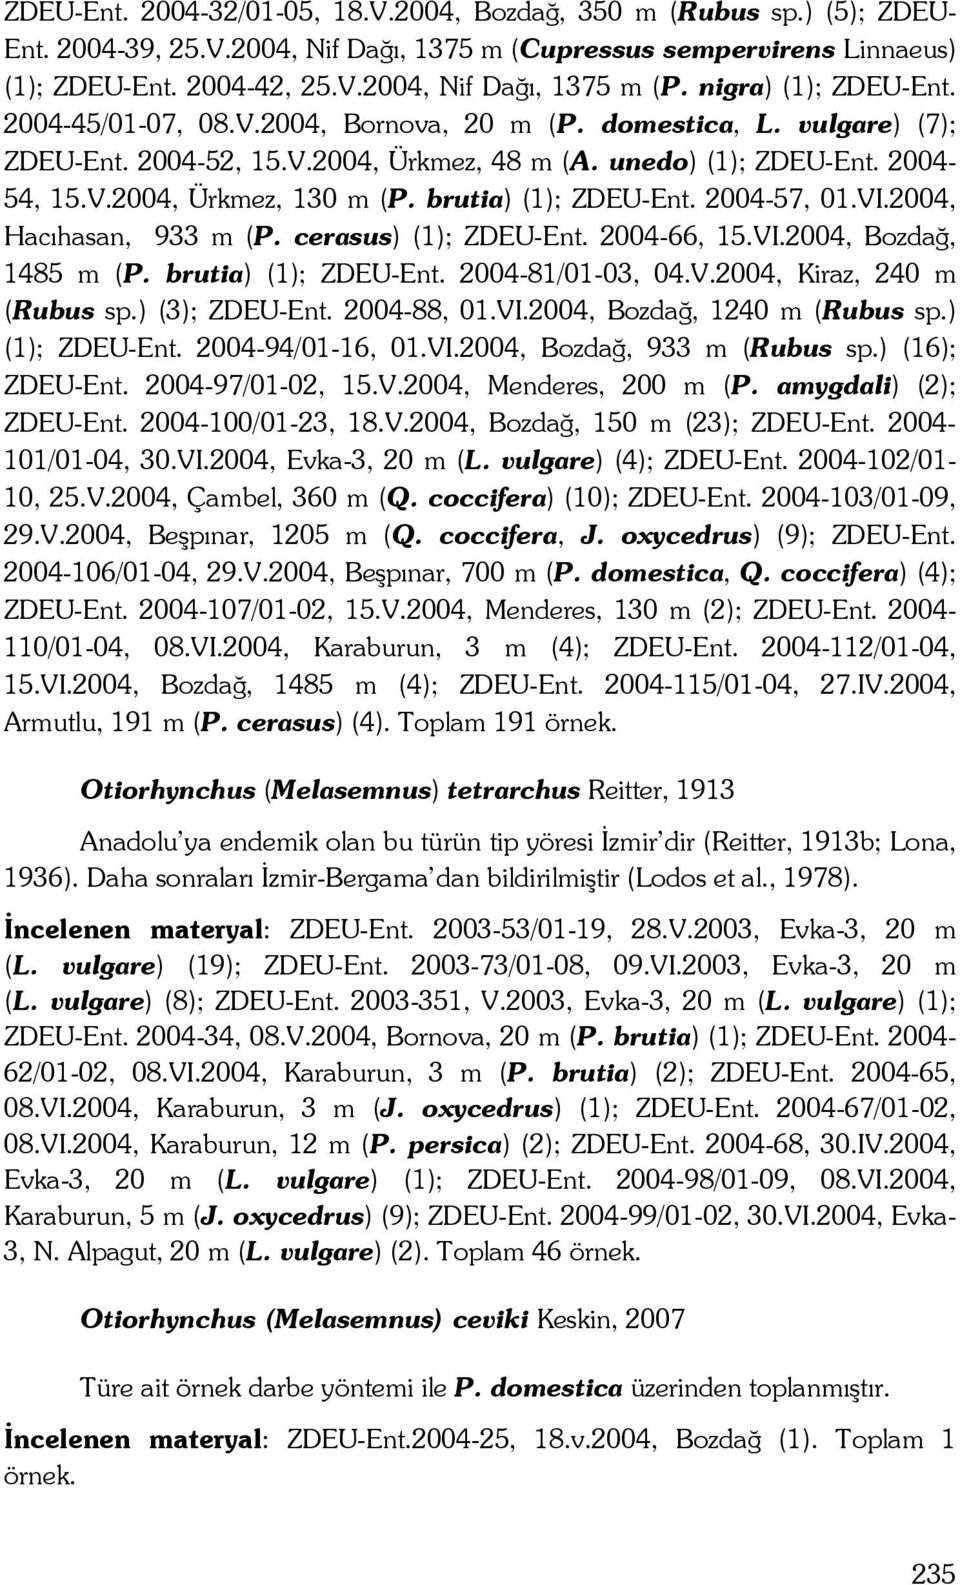 brutia) (1); ZDEU-Ent. 2004-57, 01.VI.2004, Hacıhasan, 933 m (P. cerasus) (1); ZDEU-Ent. 2004-66, 15.VI.2004, Bozdağ, 1485 m (P. brutia) (1); ZDEU-Ent. 2004-81/01-03, 04.V.2004, Kiraz, 240 m (Rubus sp.